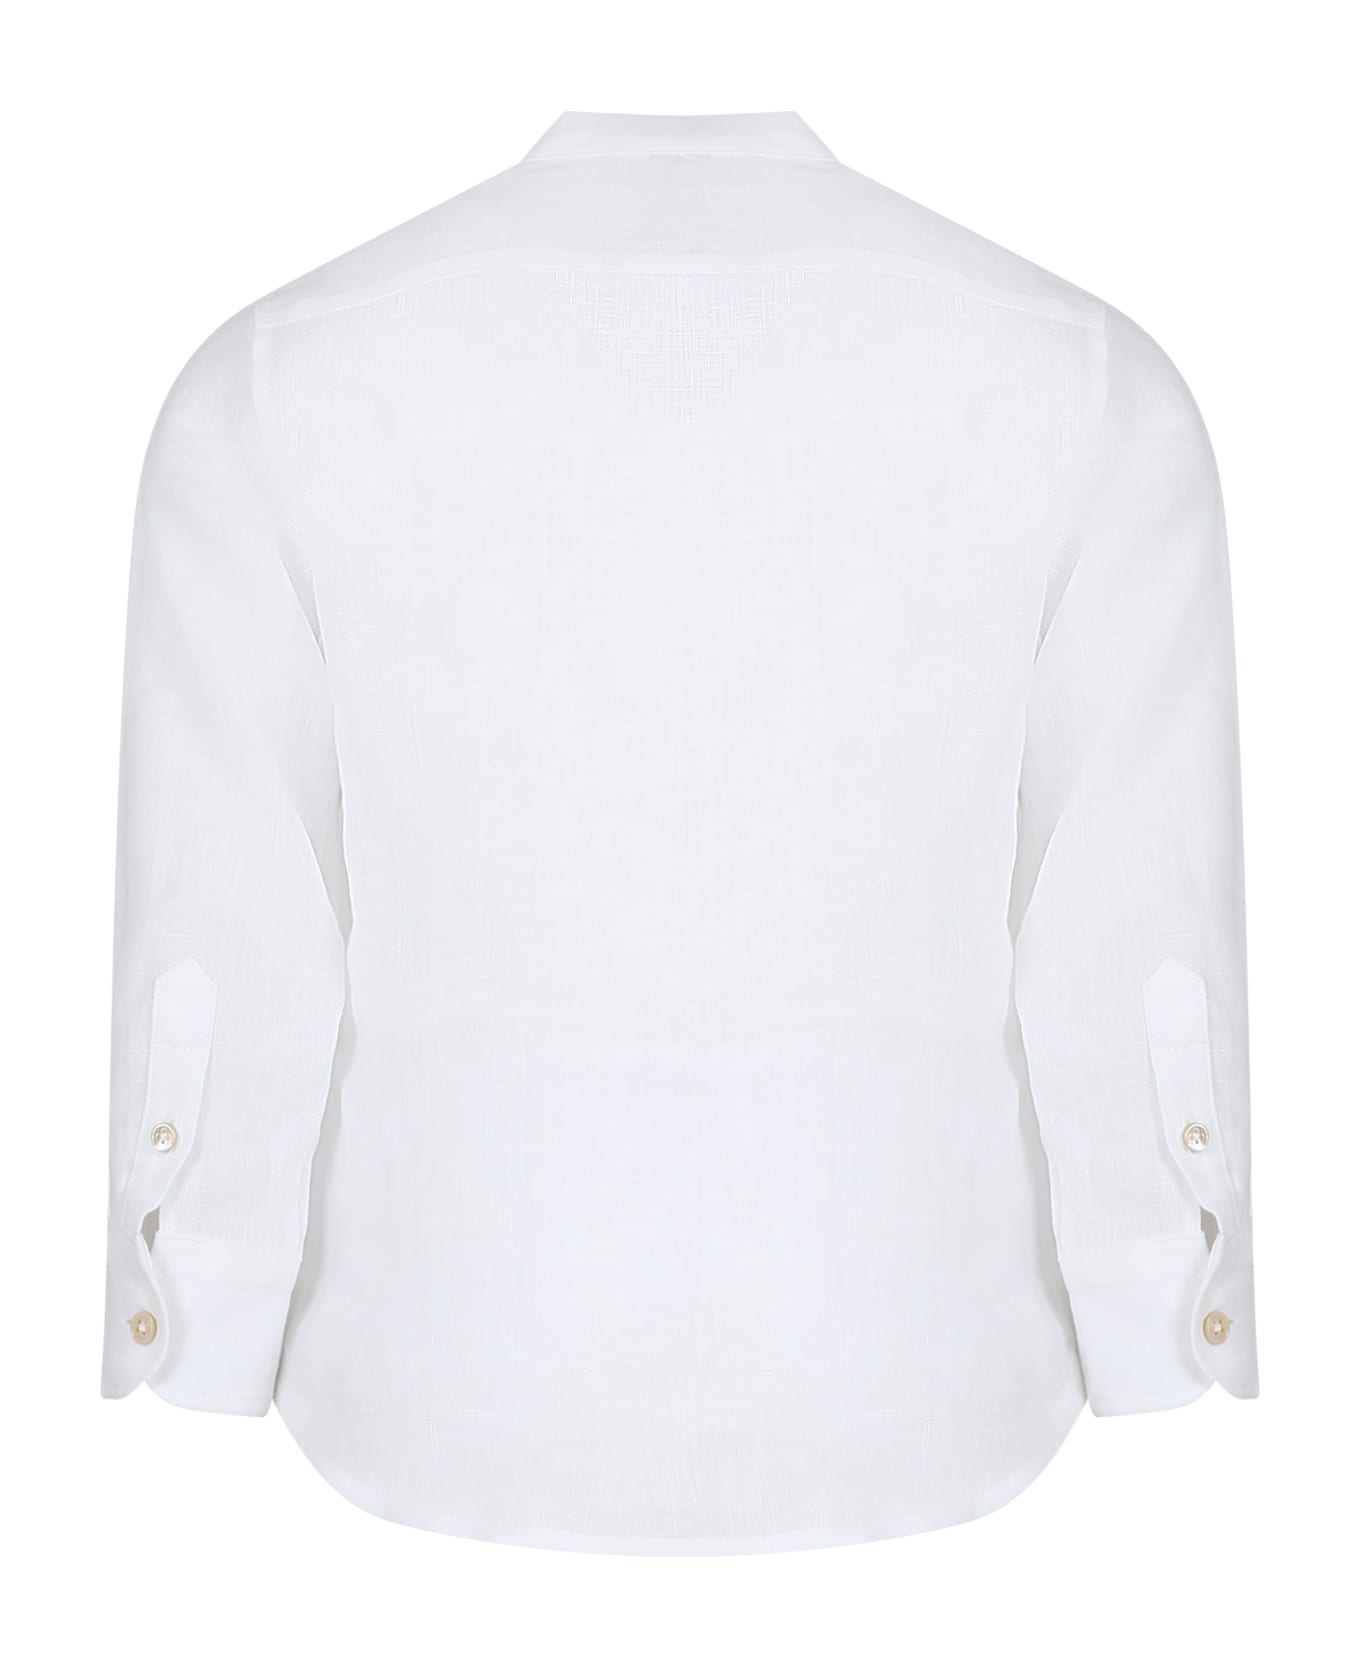 Eleventy White Shirt For Boy With Logo - Ivory シャツ